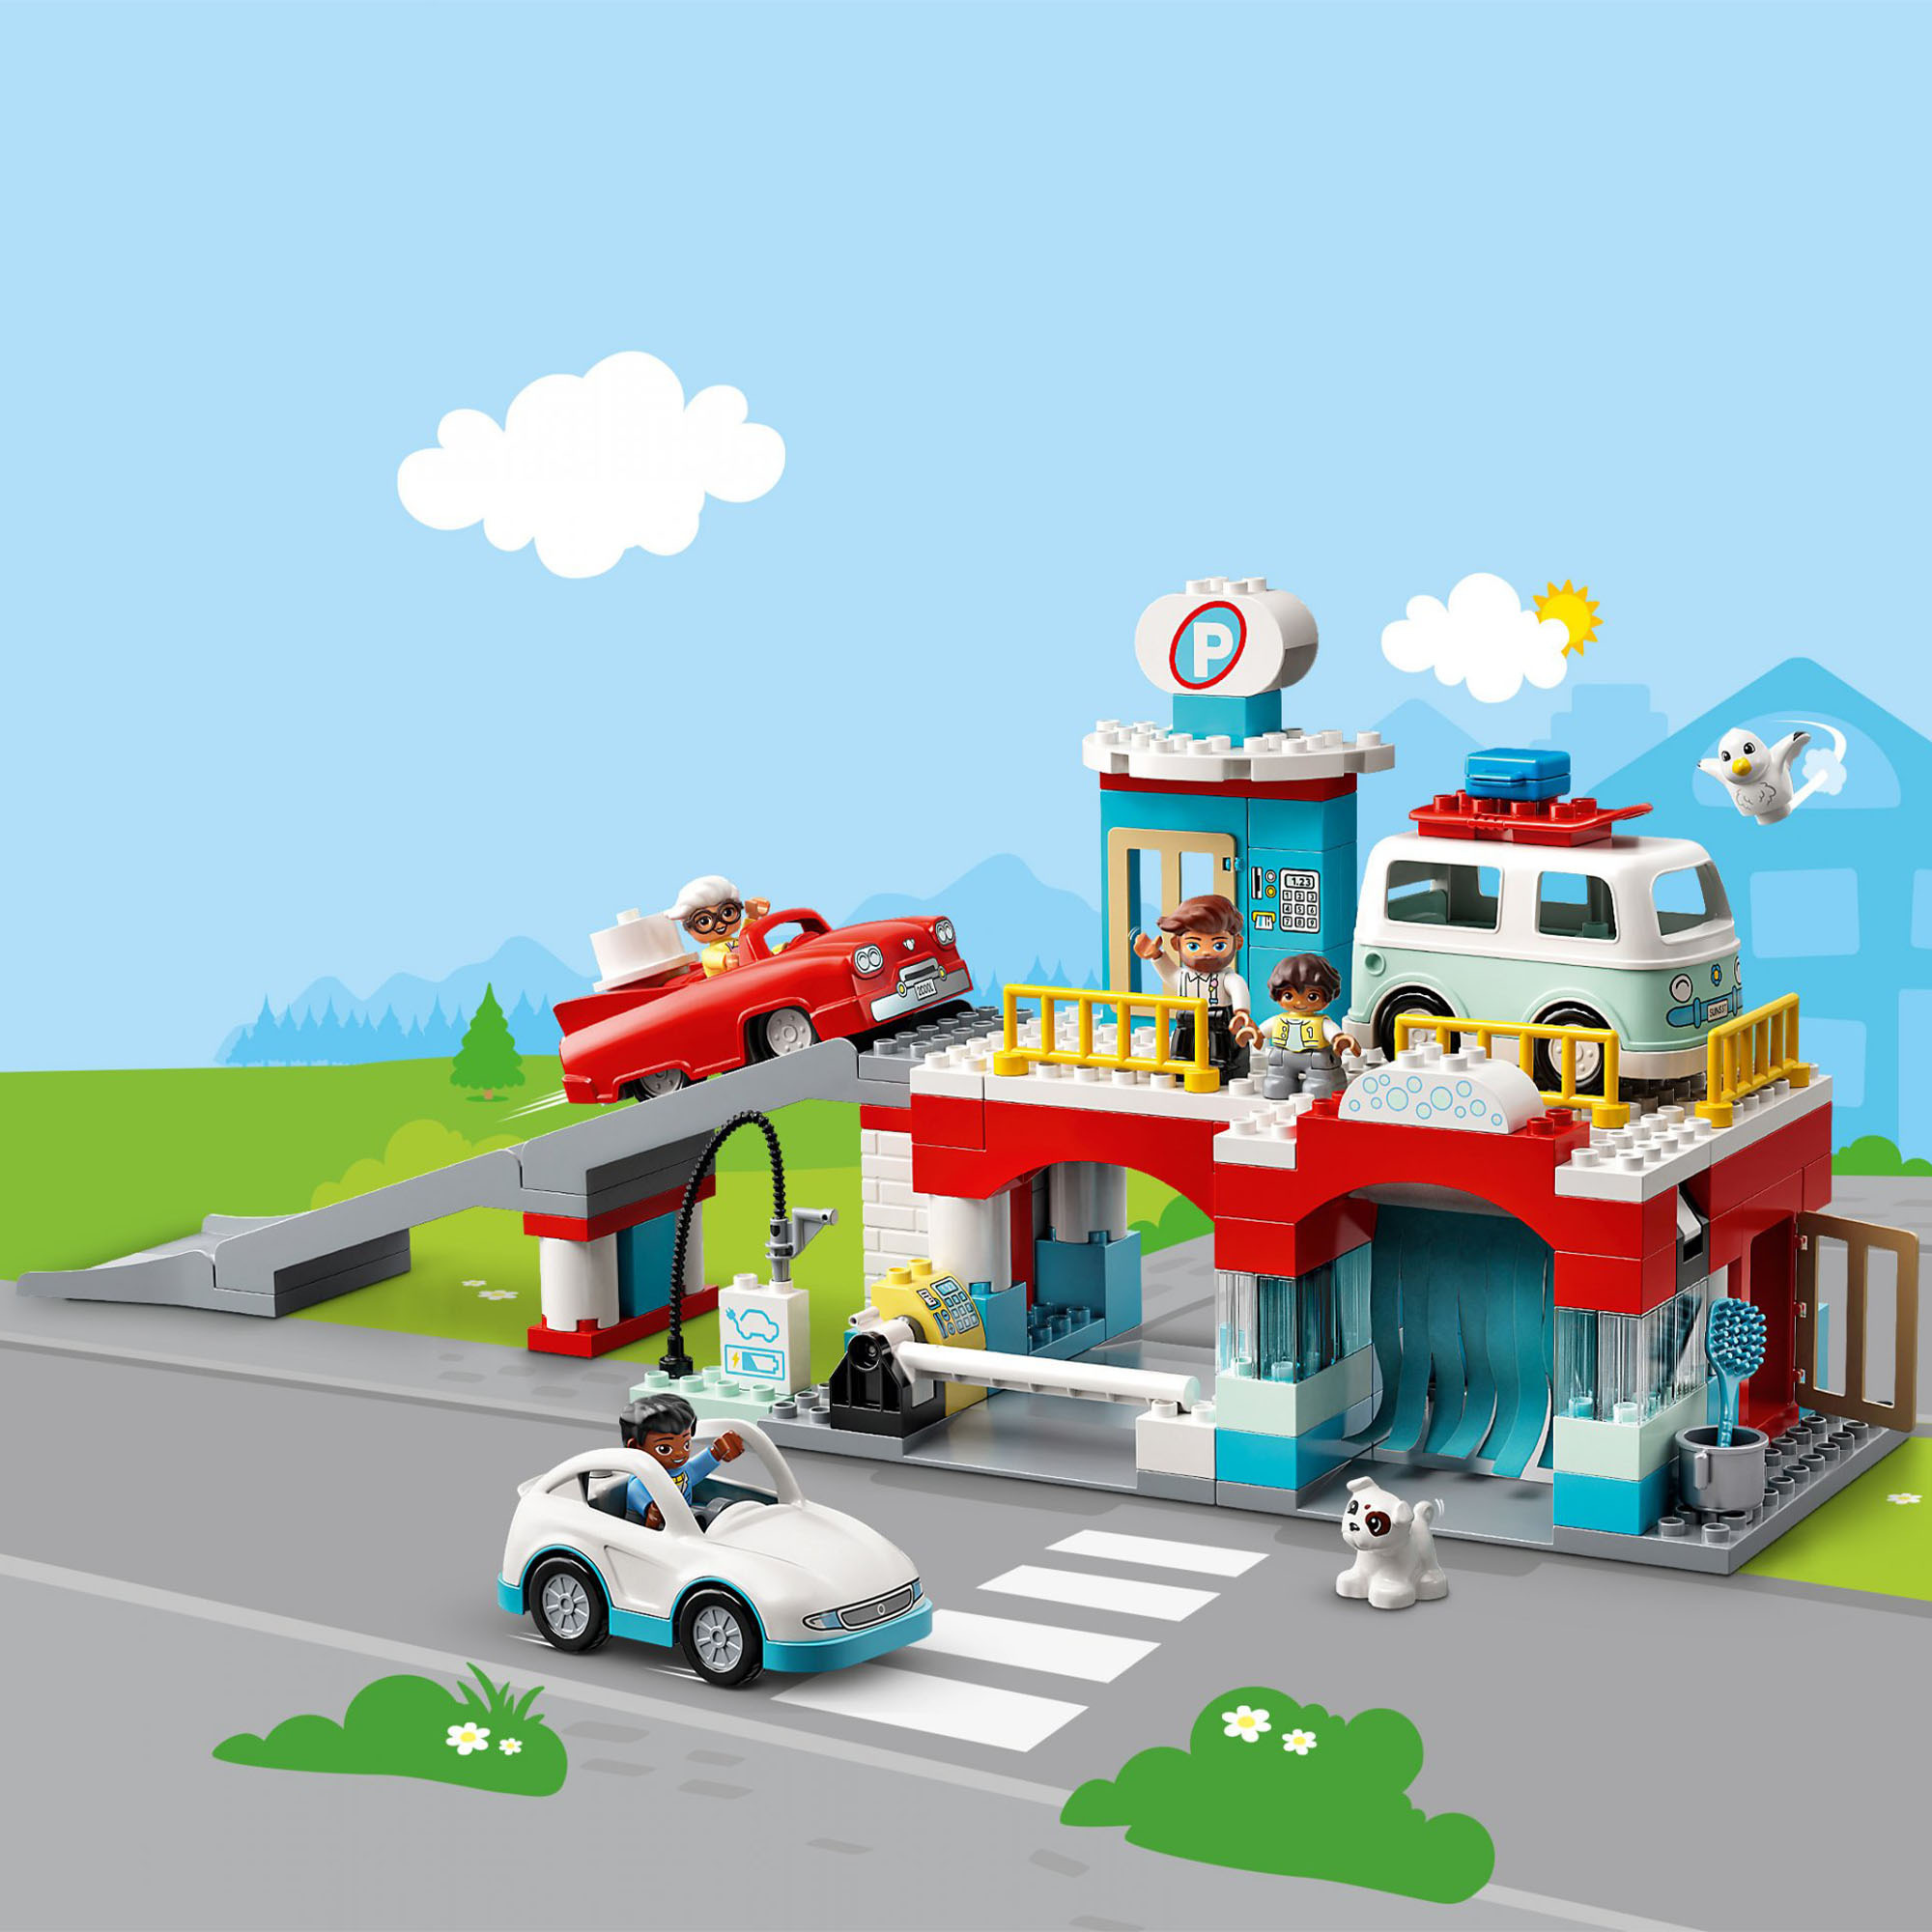 LEGO DUPLO Town Autorimessa e Autolavaggio, Garage per Macchine Giocattolo per B 10948, , large